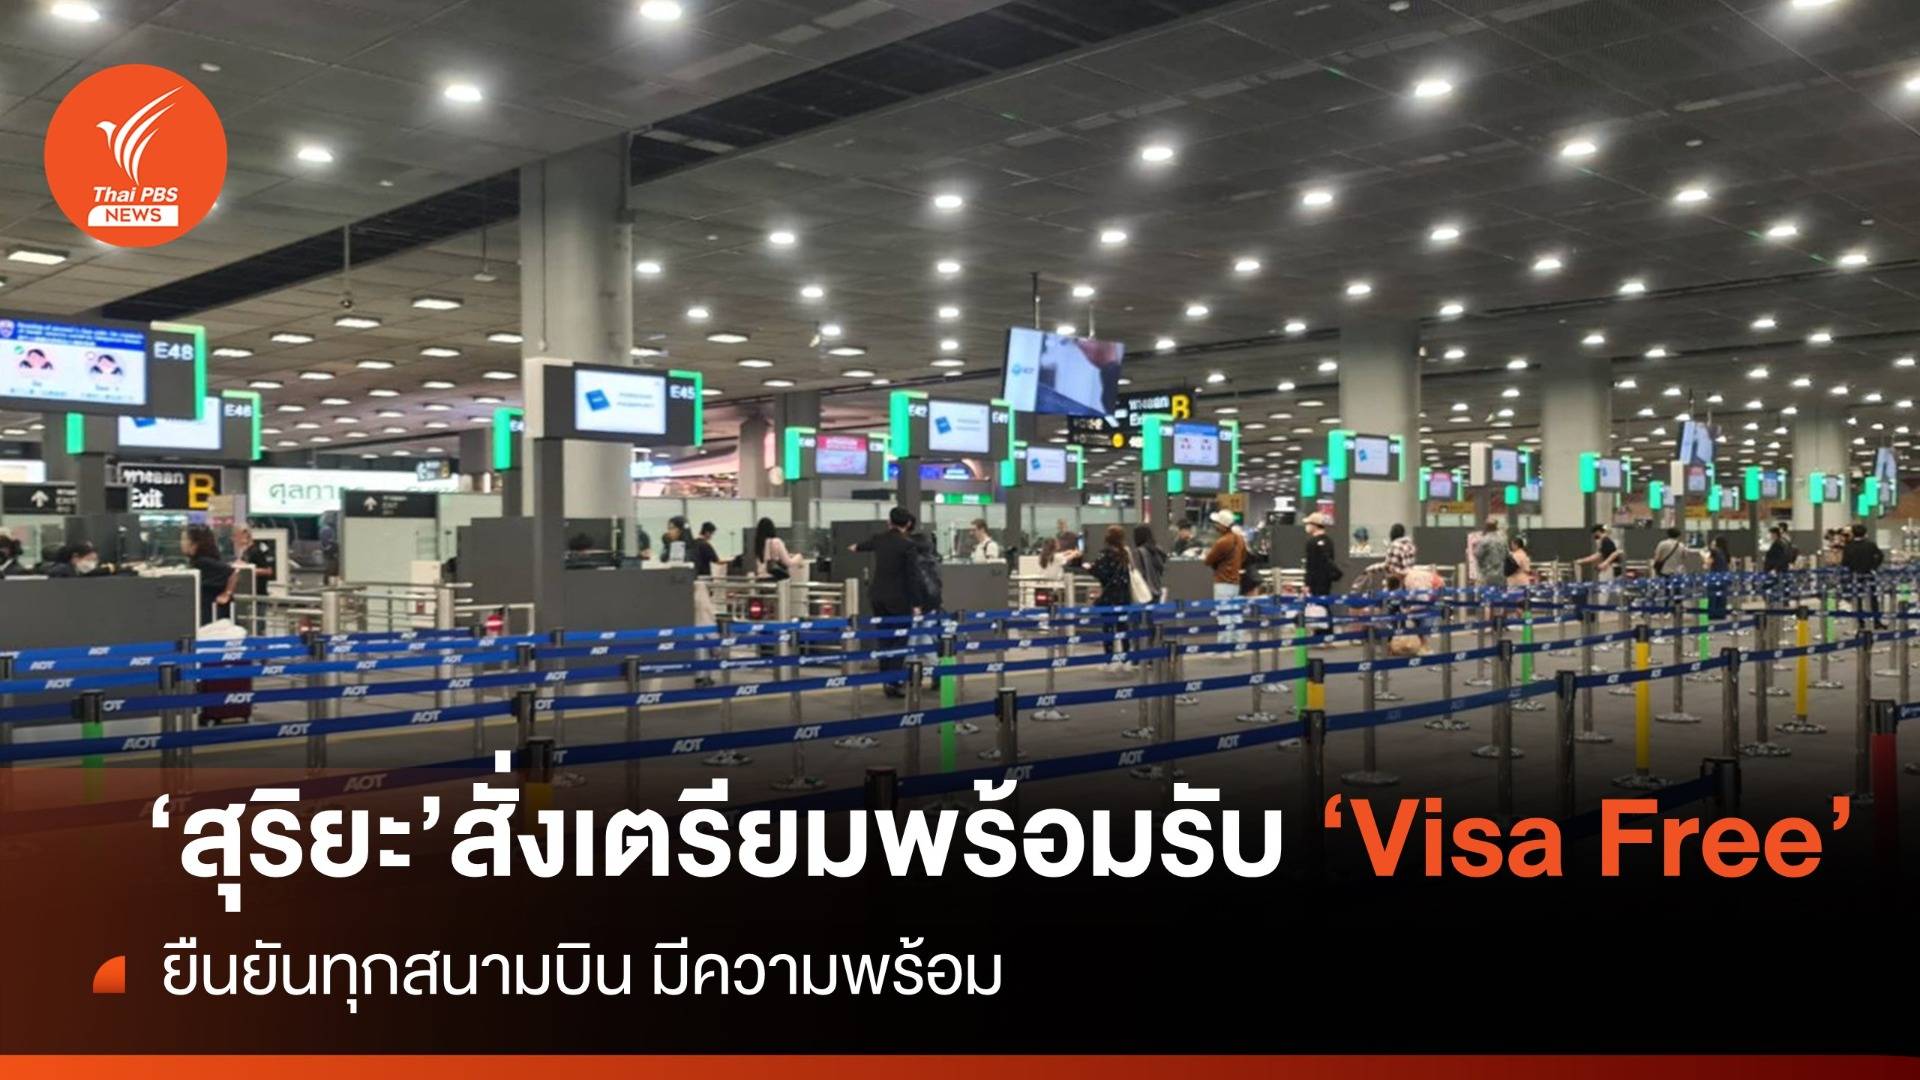 "สุริยะ" เตรียมพร้อมรับ VISA Free ยืนยันทุกสนามบินมีความพร้อมรองรับผู้โดยสาร 